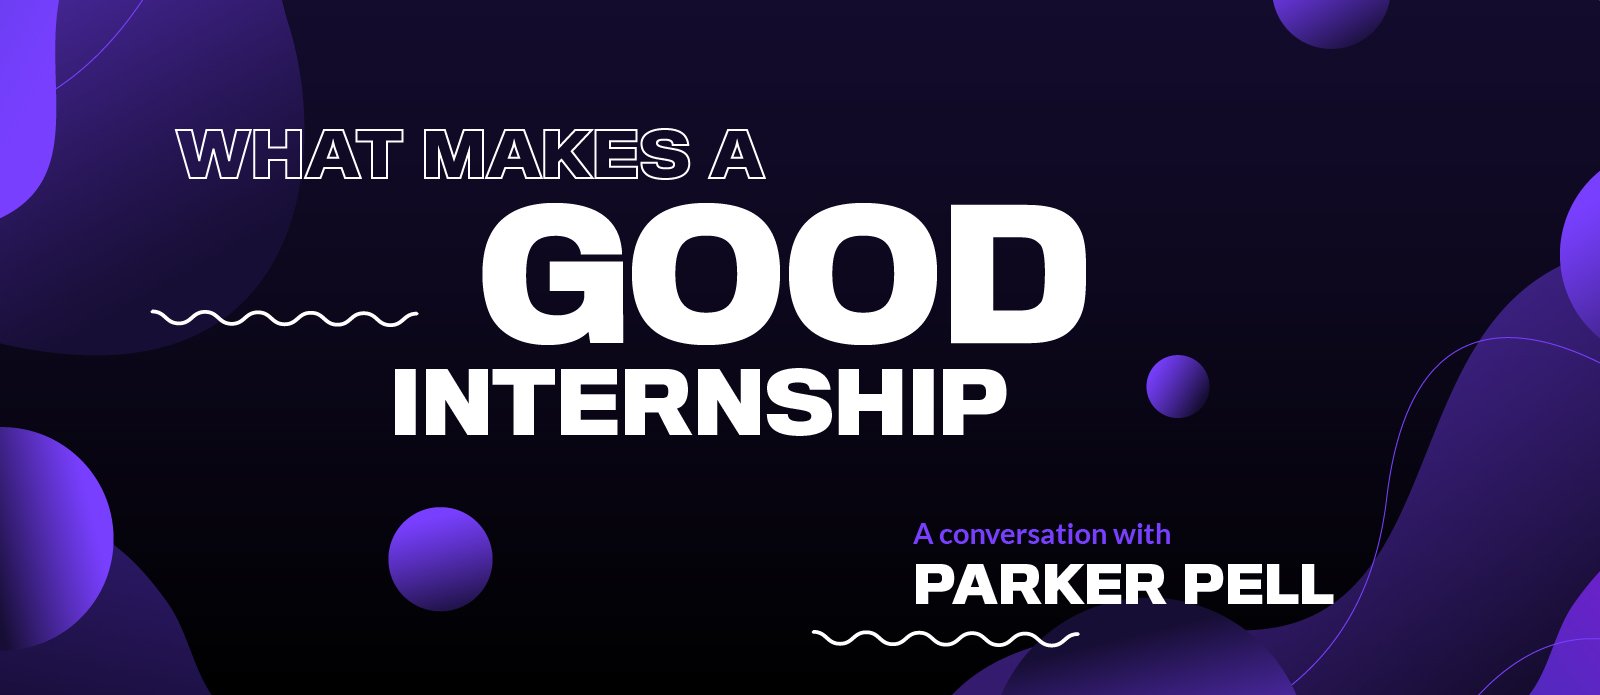 What makes a good internship